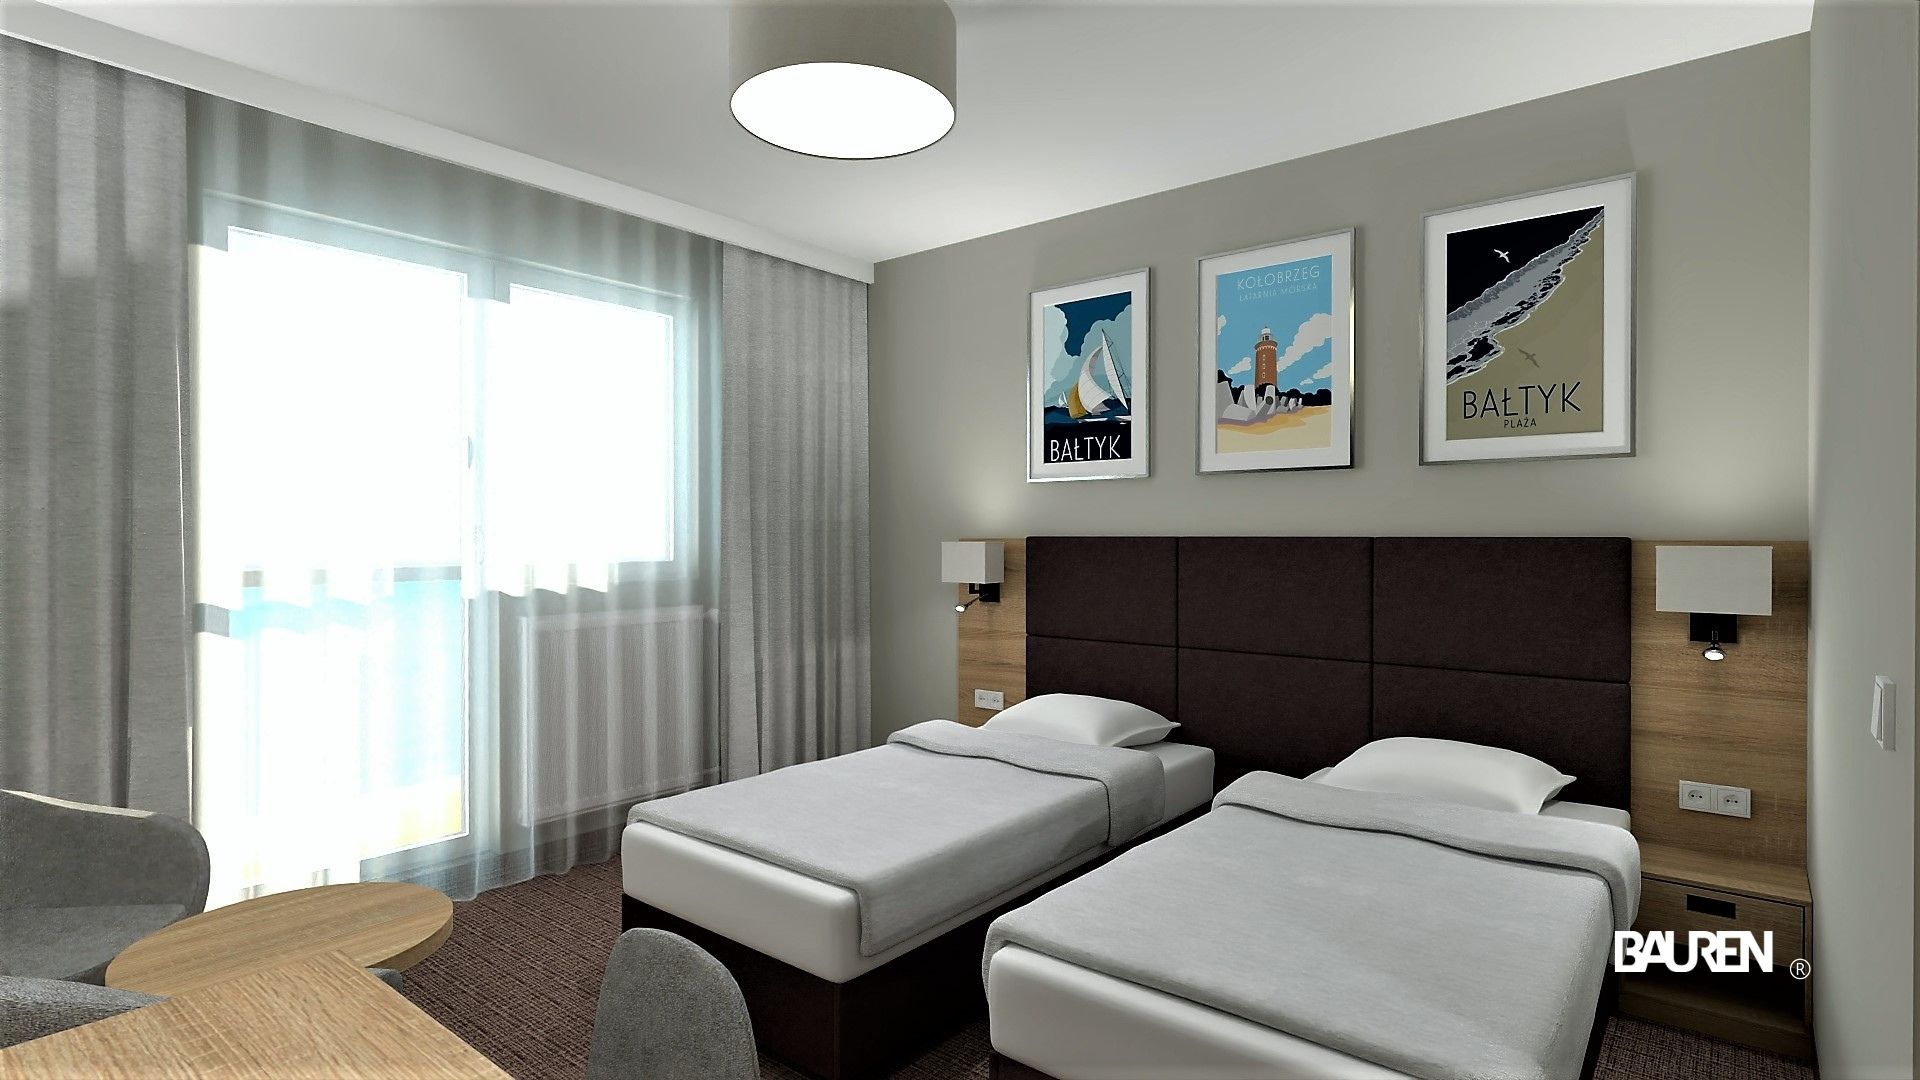 Projekt przedstawia pokój w części noclegowej w Hotelu*** NAT w Kołobrzegu. Projekt wykonany został przez biuro projektowe BAUREN w Rybniku